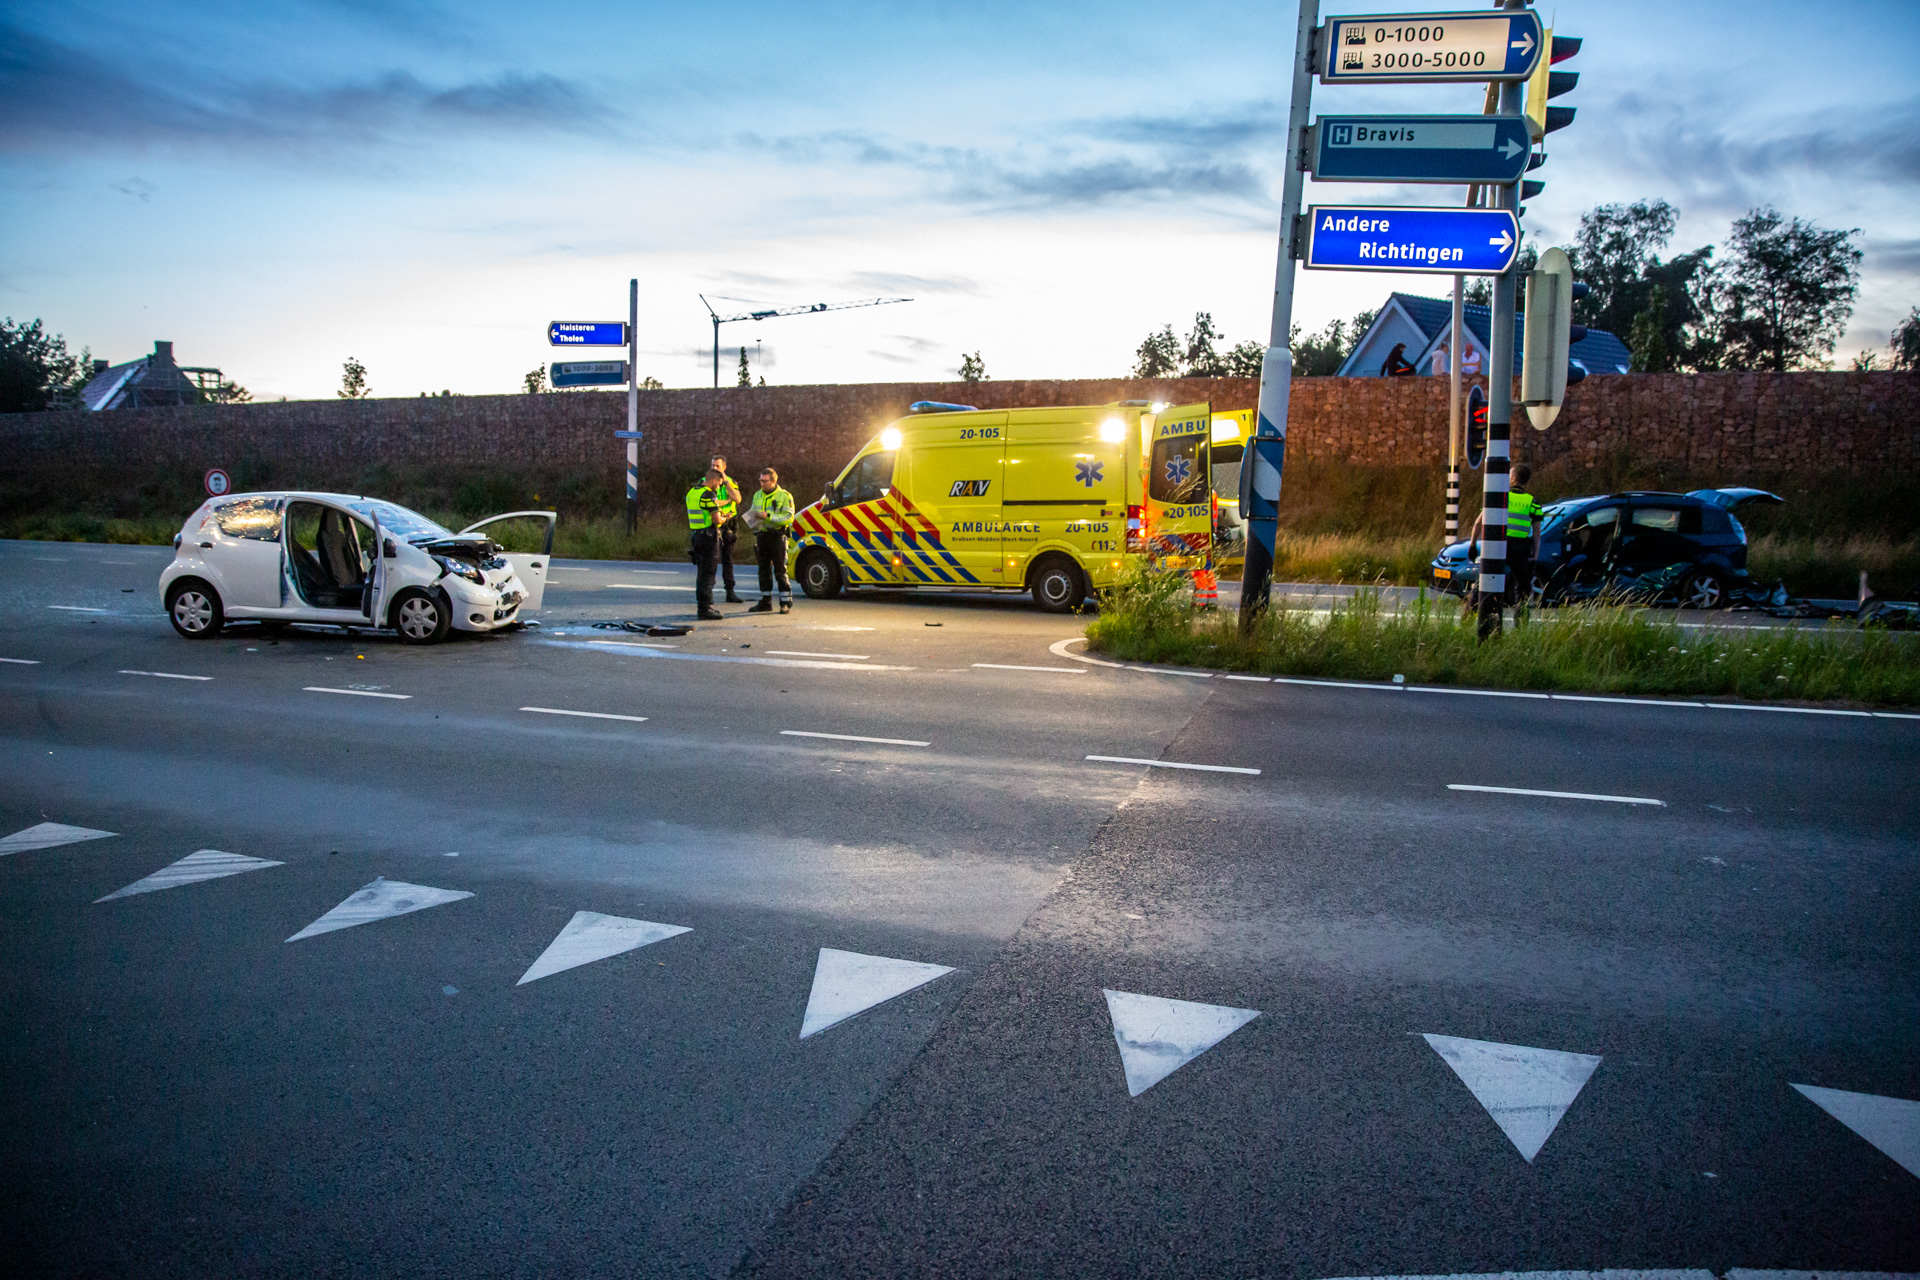 Ongeval op kruising Randweg Noord, drie gewonden